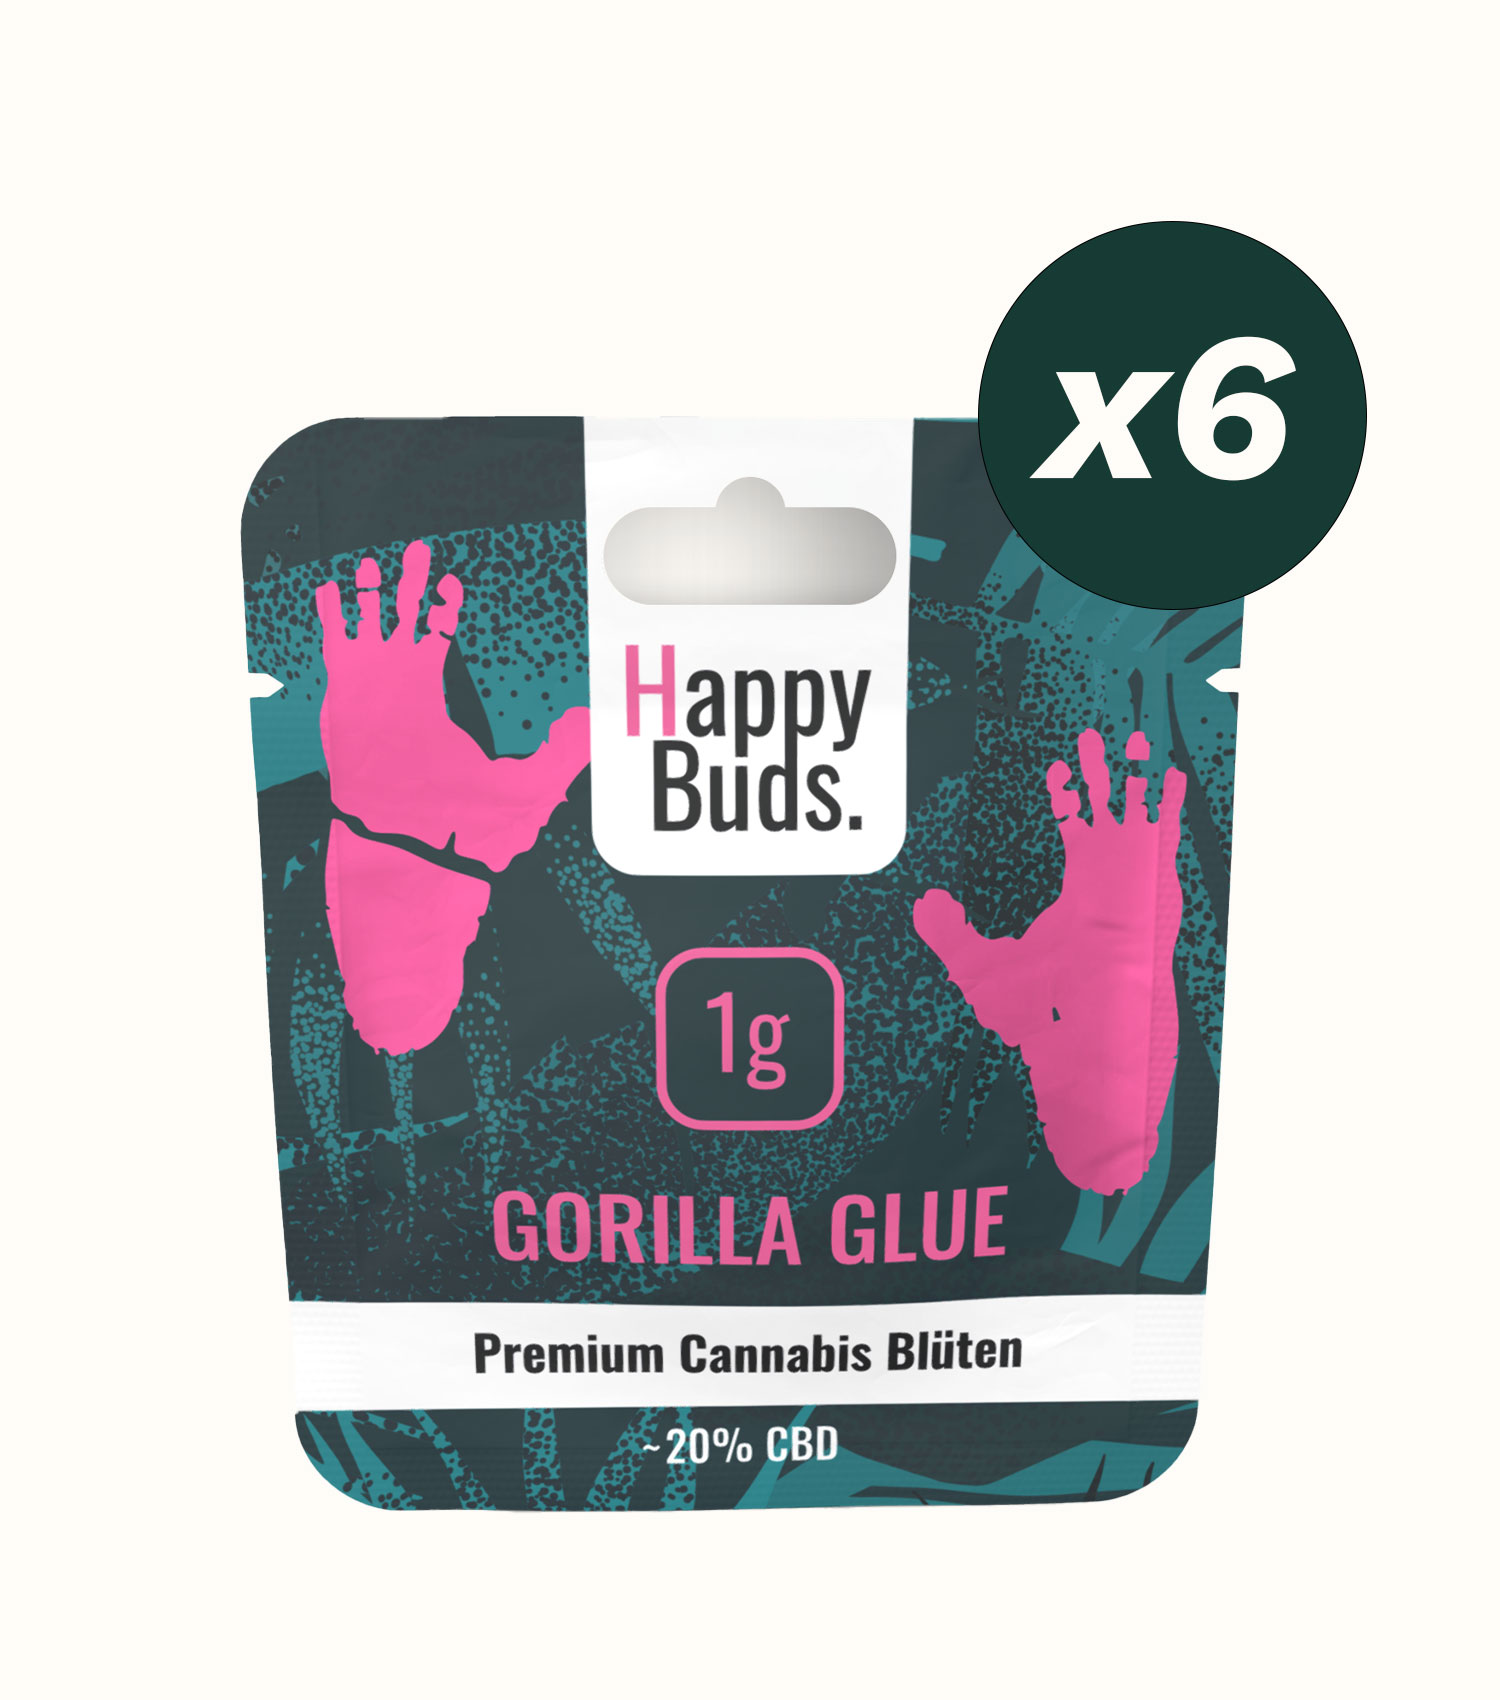 Gorilla Glue 3g (6 Stk. Euroloch)